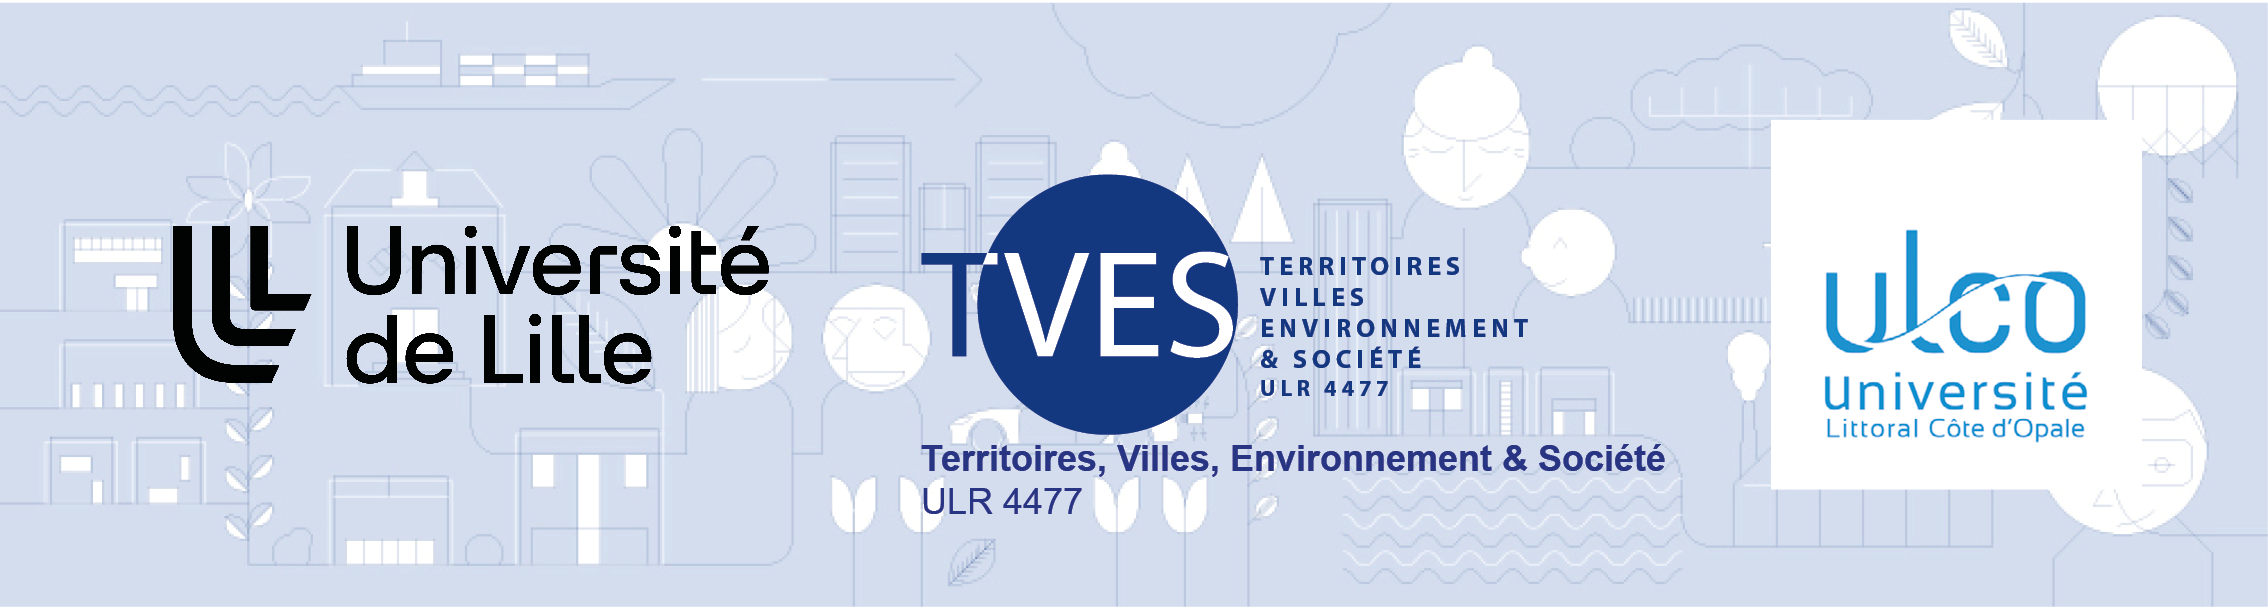 Bandeau 3 logos Laboratoire TVES Université de Lille et Université du Littoral Côte d'Opale